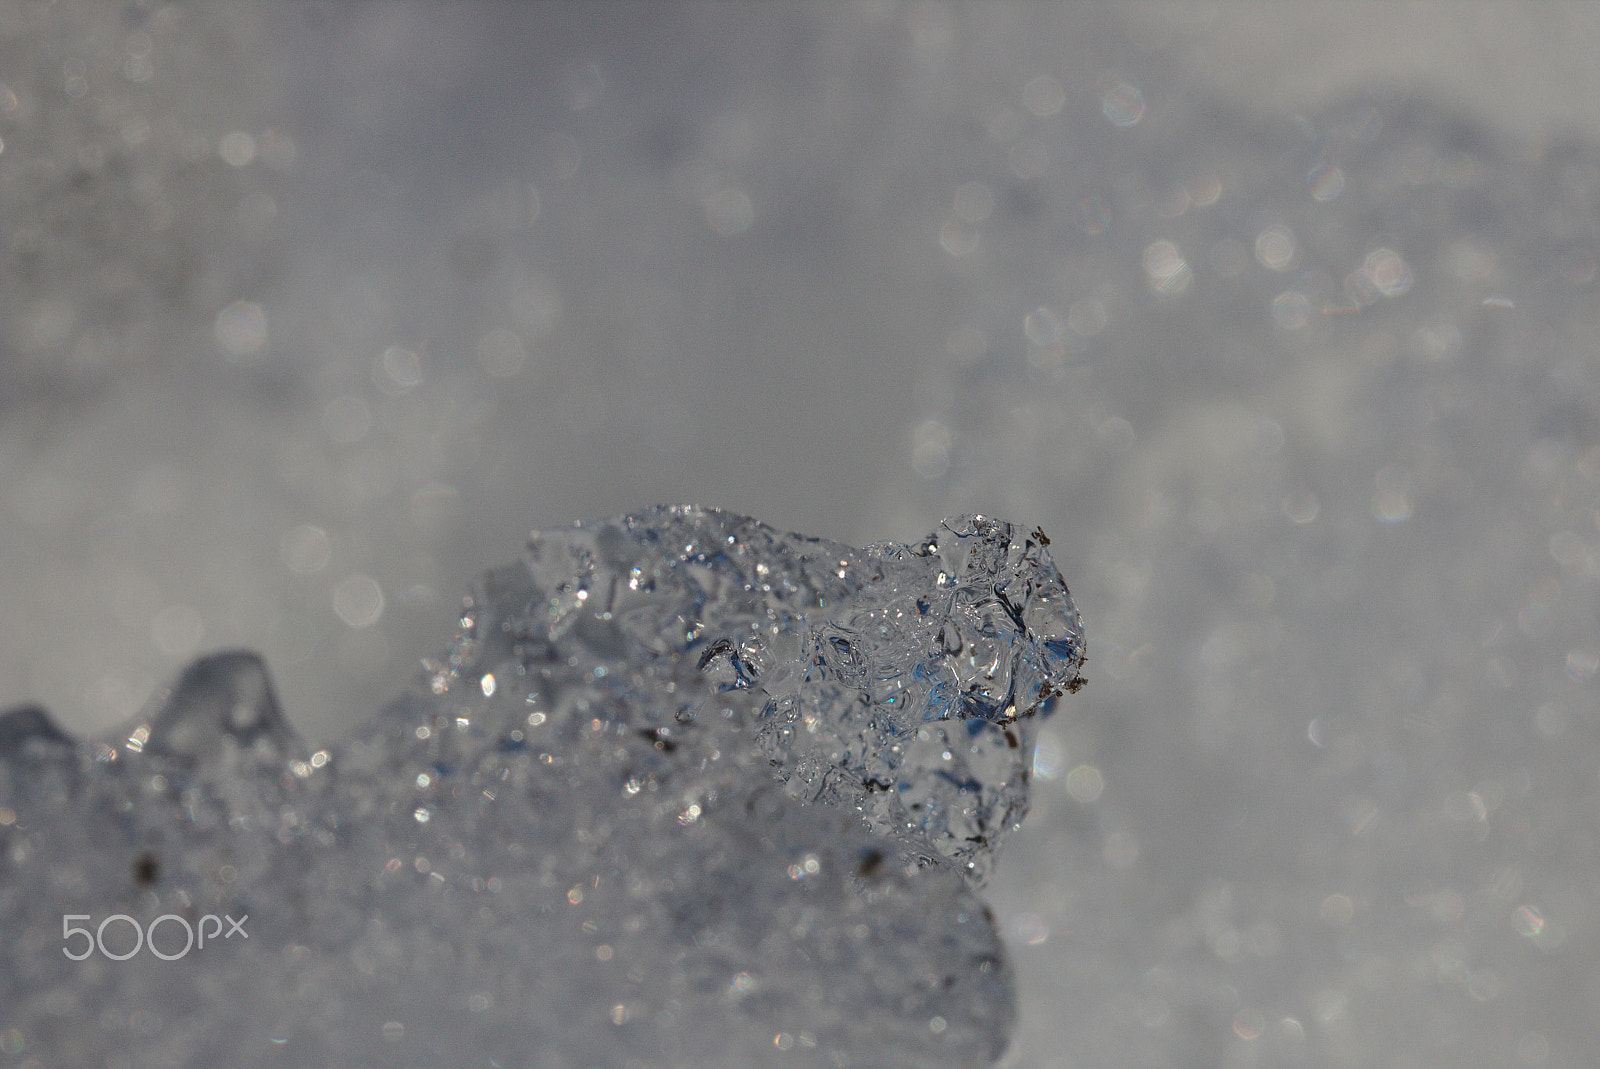 Canon EOS 70D sample photo. Ice closeup photography